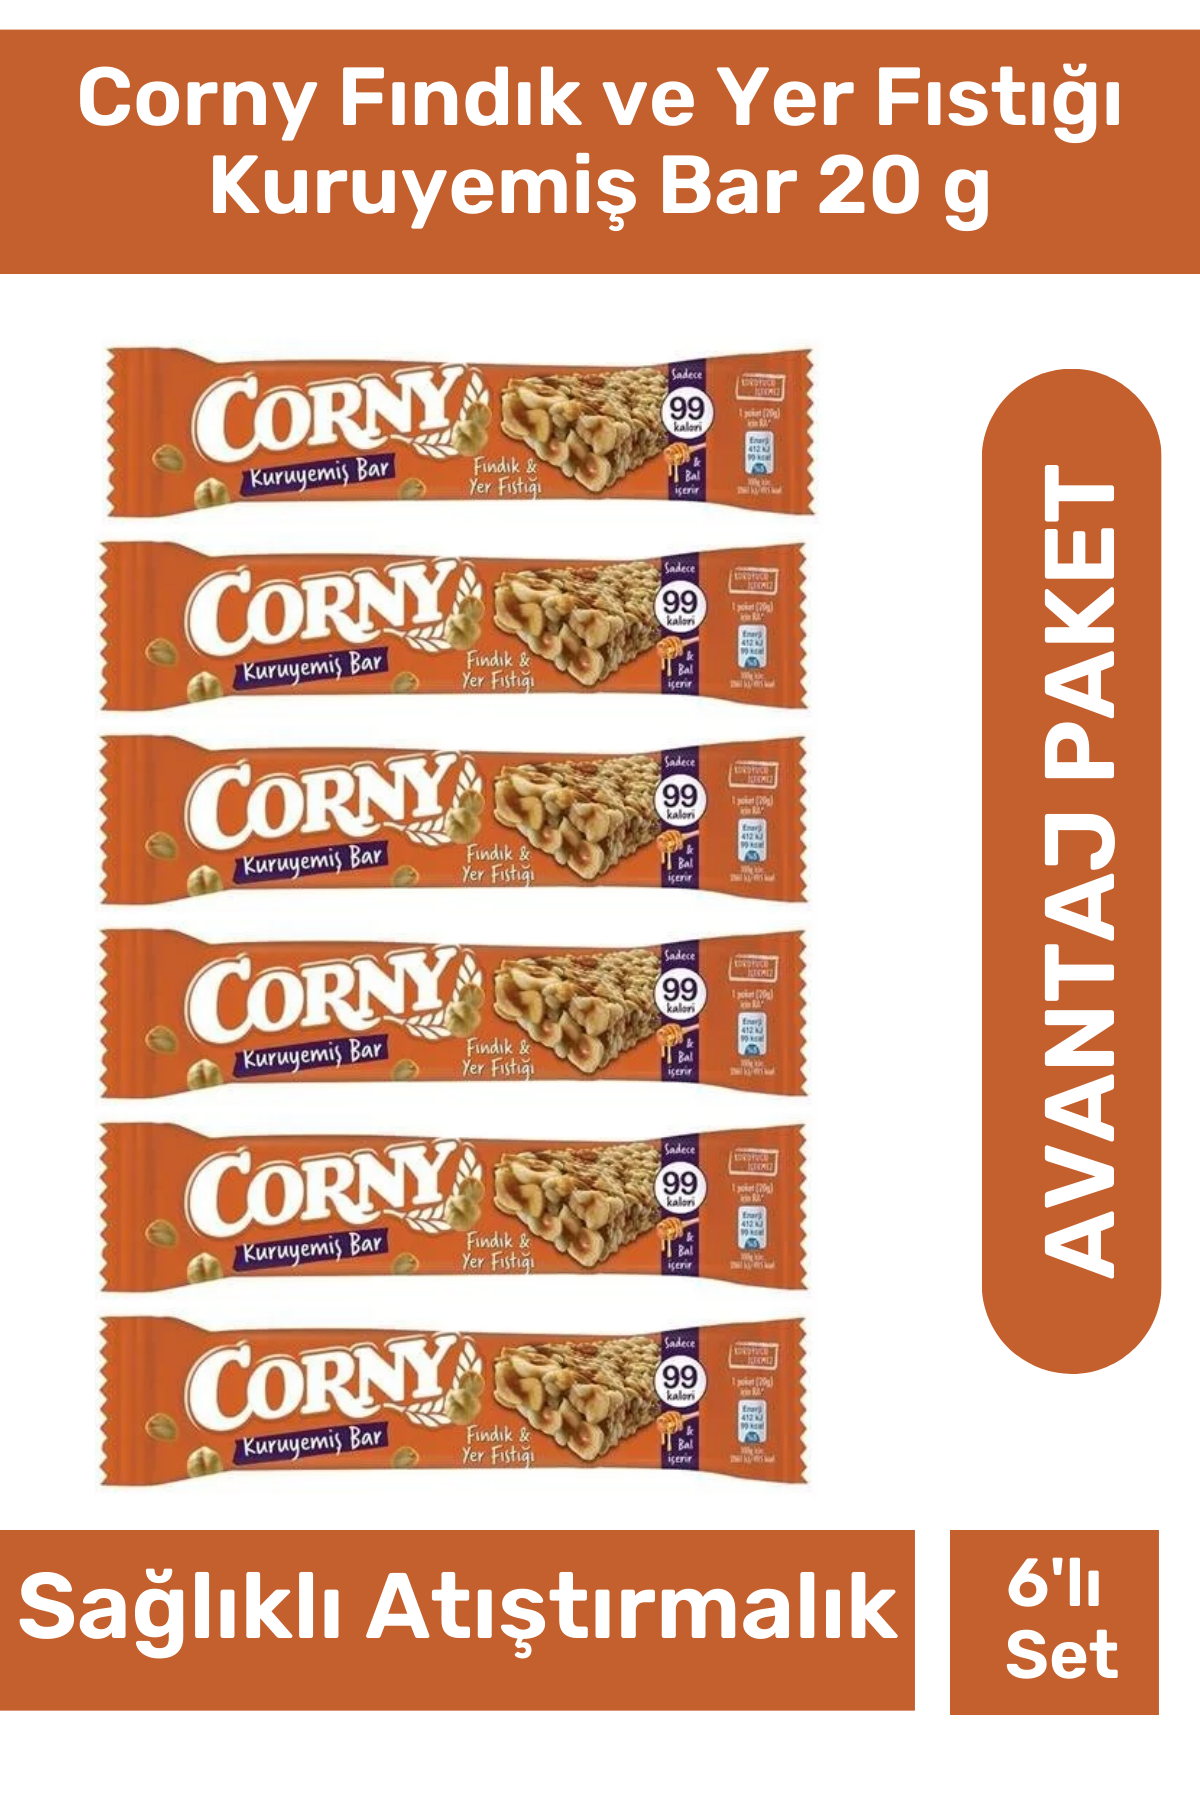 Corny Fındık ve Yer Fıstığı Kuruyemiş Bar 20 g 6'lı Paket